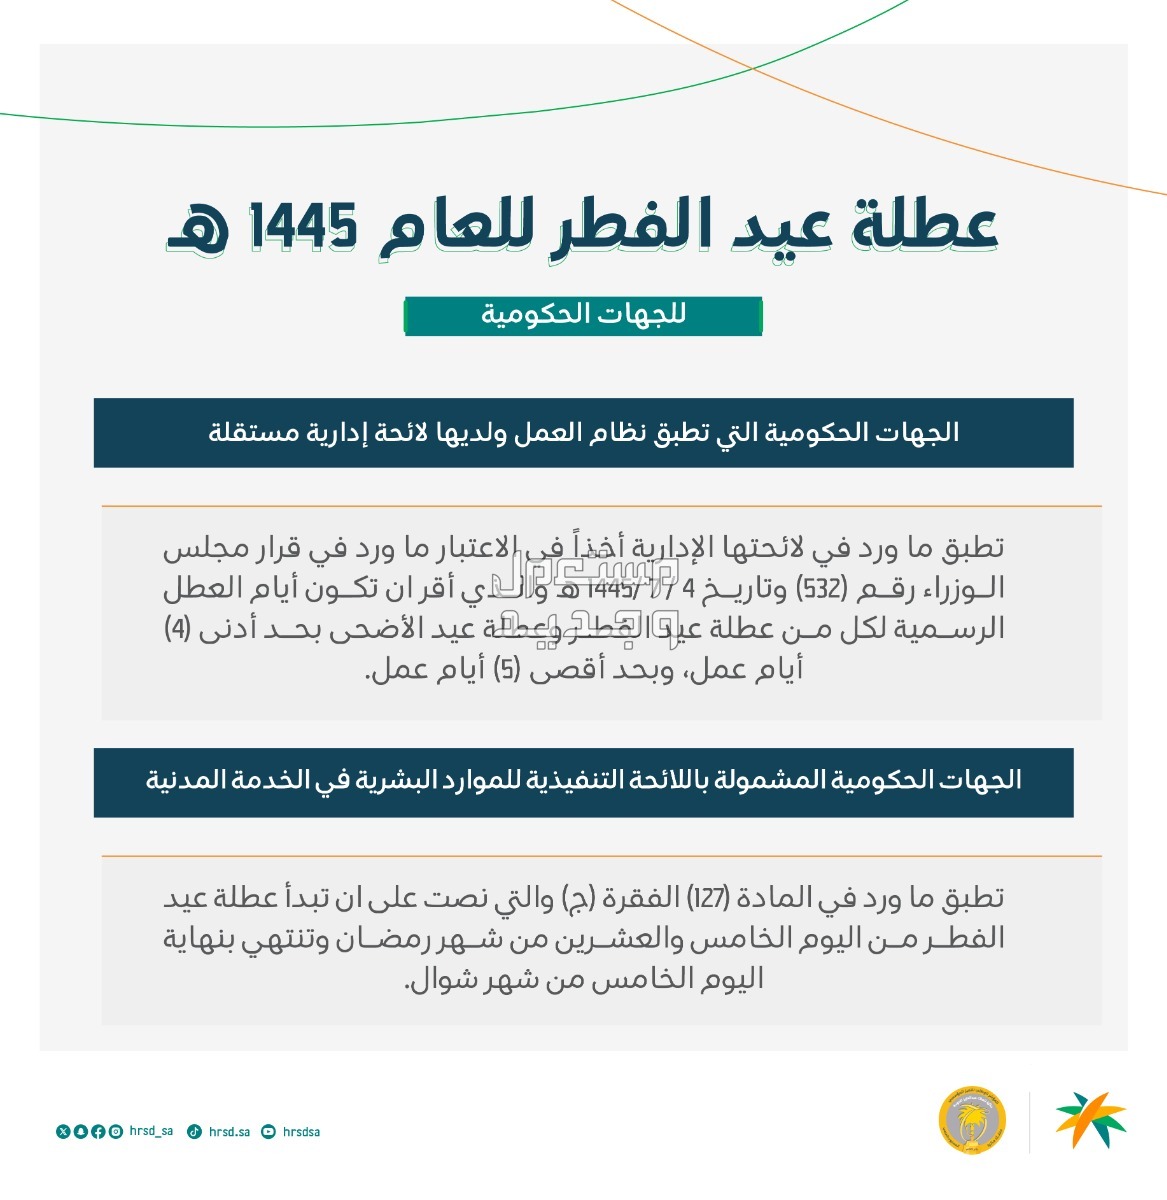 عدد أيام عطلة عيد الفطر 1445 للموظفين وطلاب المدارس في الأردن عطلة عيد الفطر 1445